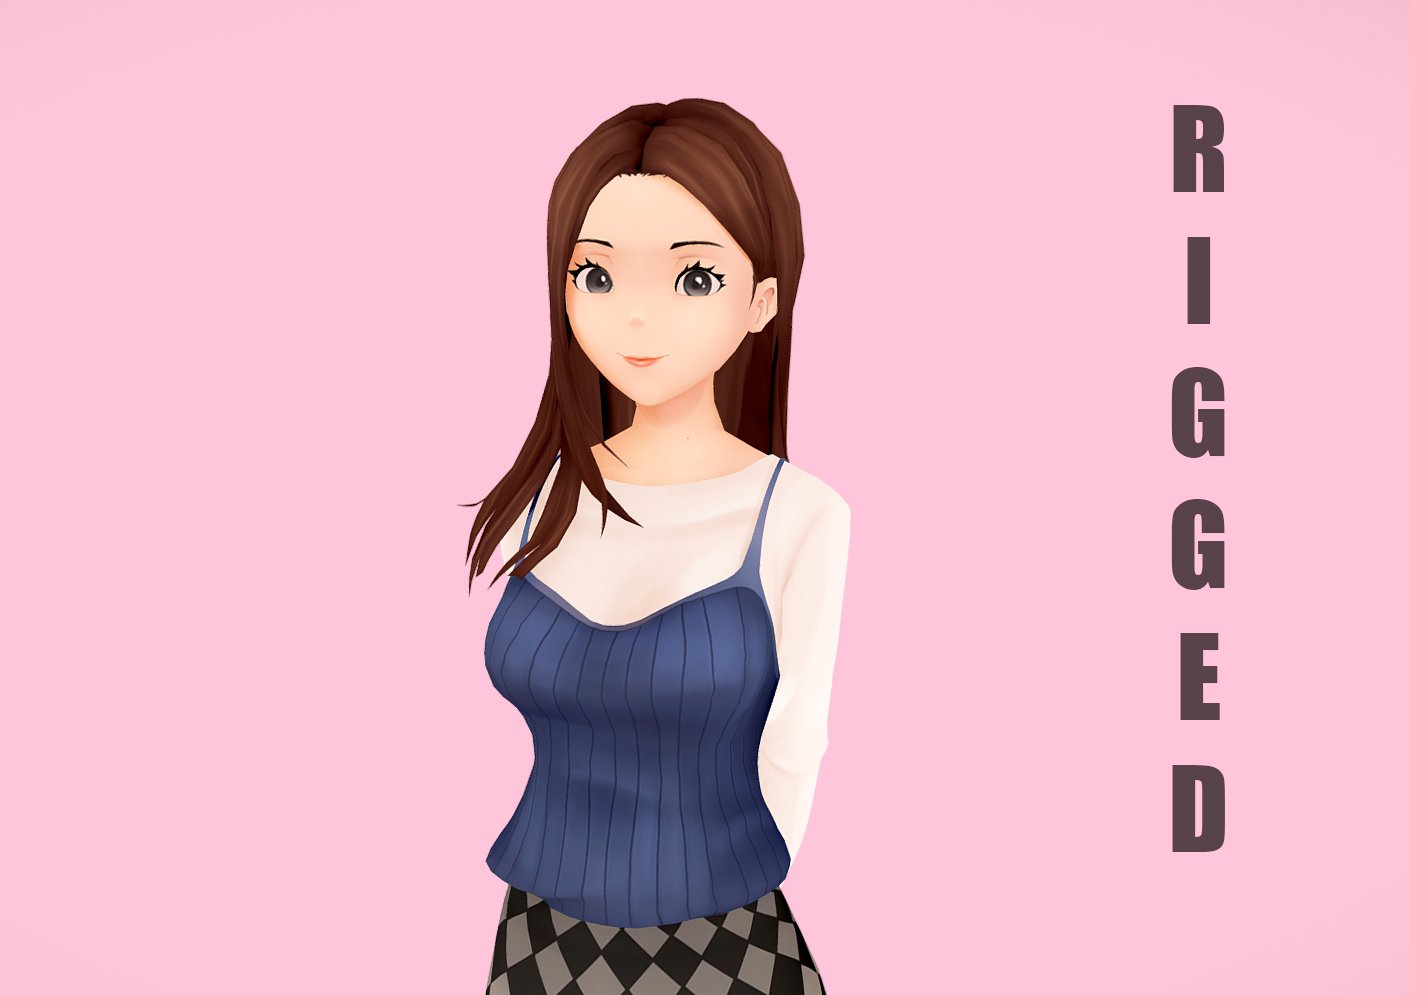 Các fan của nhân vật nữ Anime Character 3D Model đã tìm thấy điểm đến hoàn hảo với mẫu Rigged Anime Girl 3D Model năm 2024 của chúng tôi. Thiết kế đẹp mắt và trang bị đầy đủ để giúp cho nhân vật trở nên sống động hơn bao giờ hết. Hãy cùng trải nghiệm tuyệt vời nhất với Rigged Anime Girl 3D Model 2024 của chúng tôi.